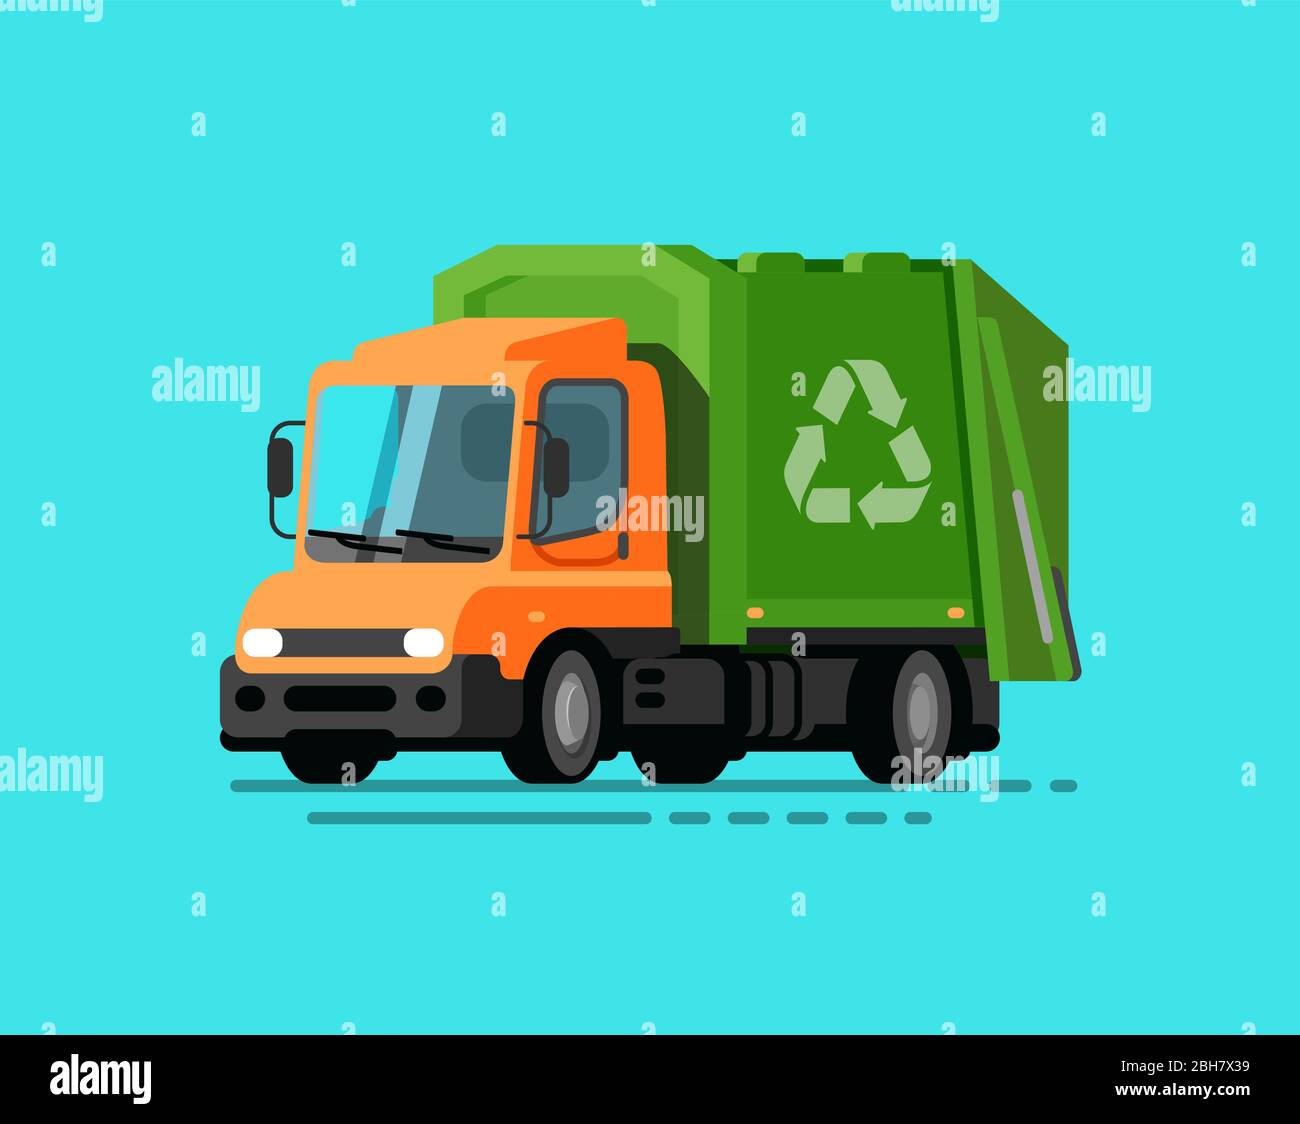 Veicolo per rifiuti. Illustrazione del vettore di smistamento dei rifiuti, riciclaggio Illustrazione Vettoriale